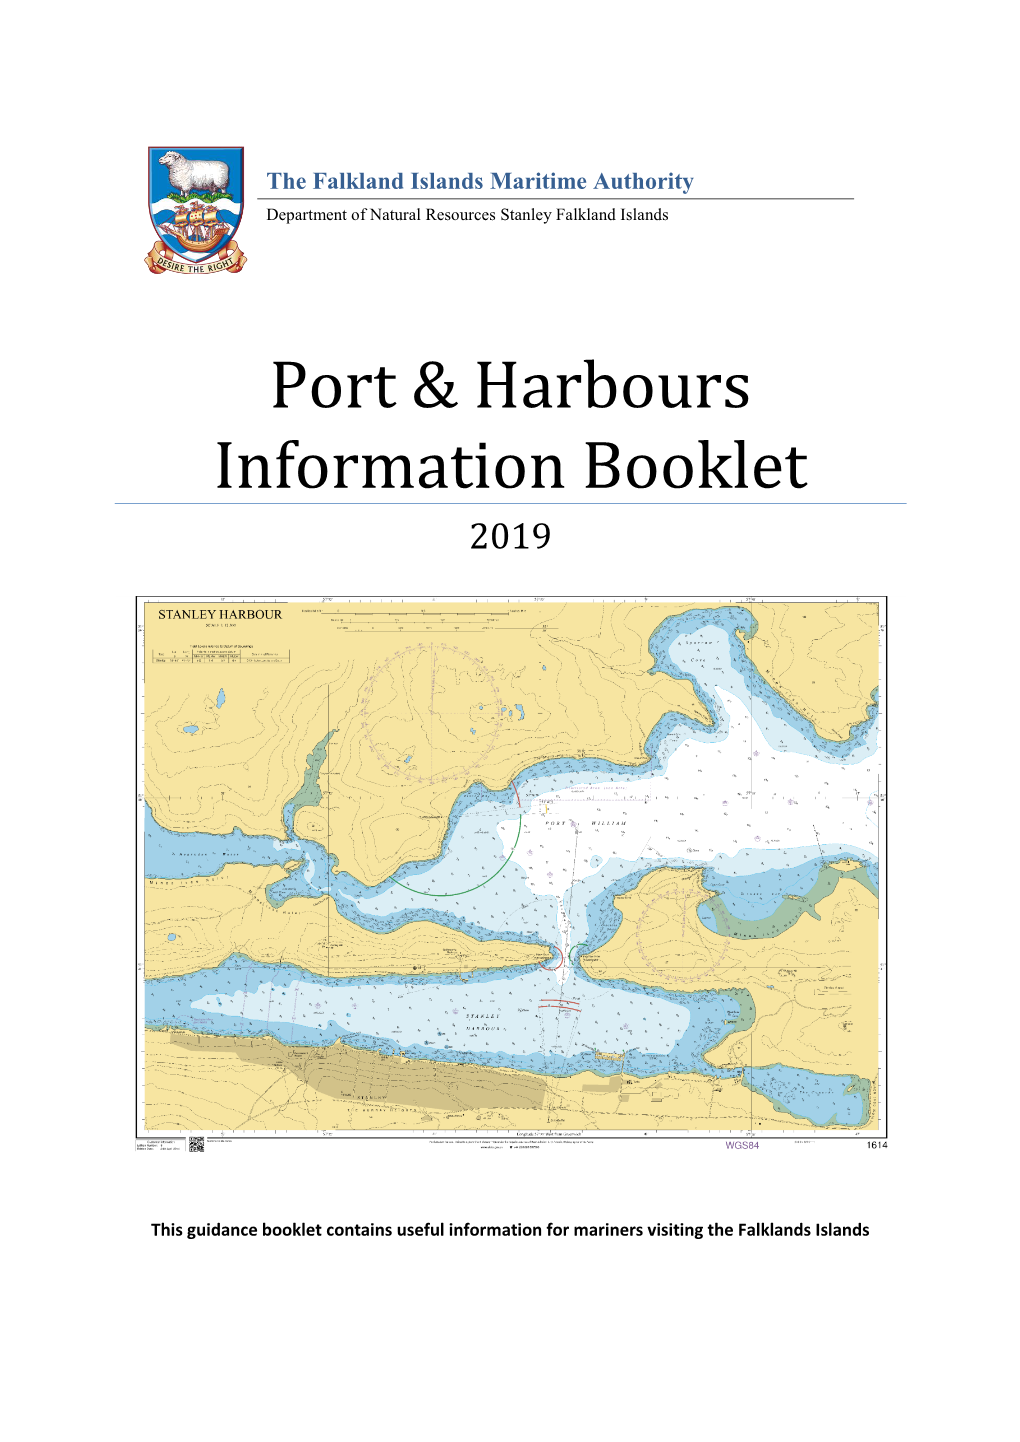 Port & Harbours Information Booklet